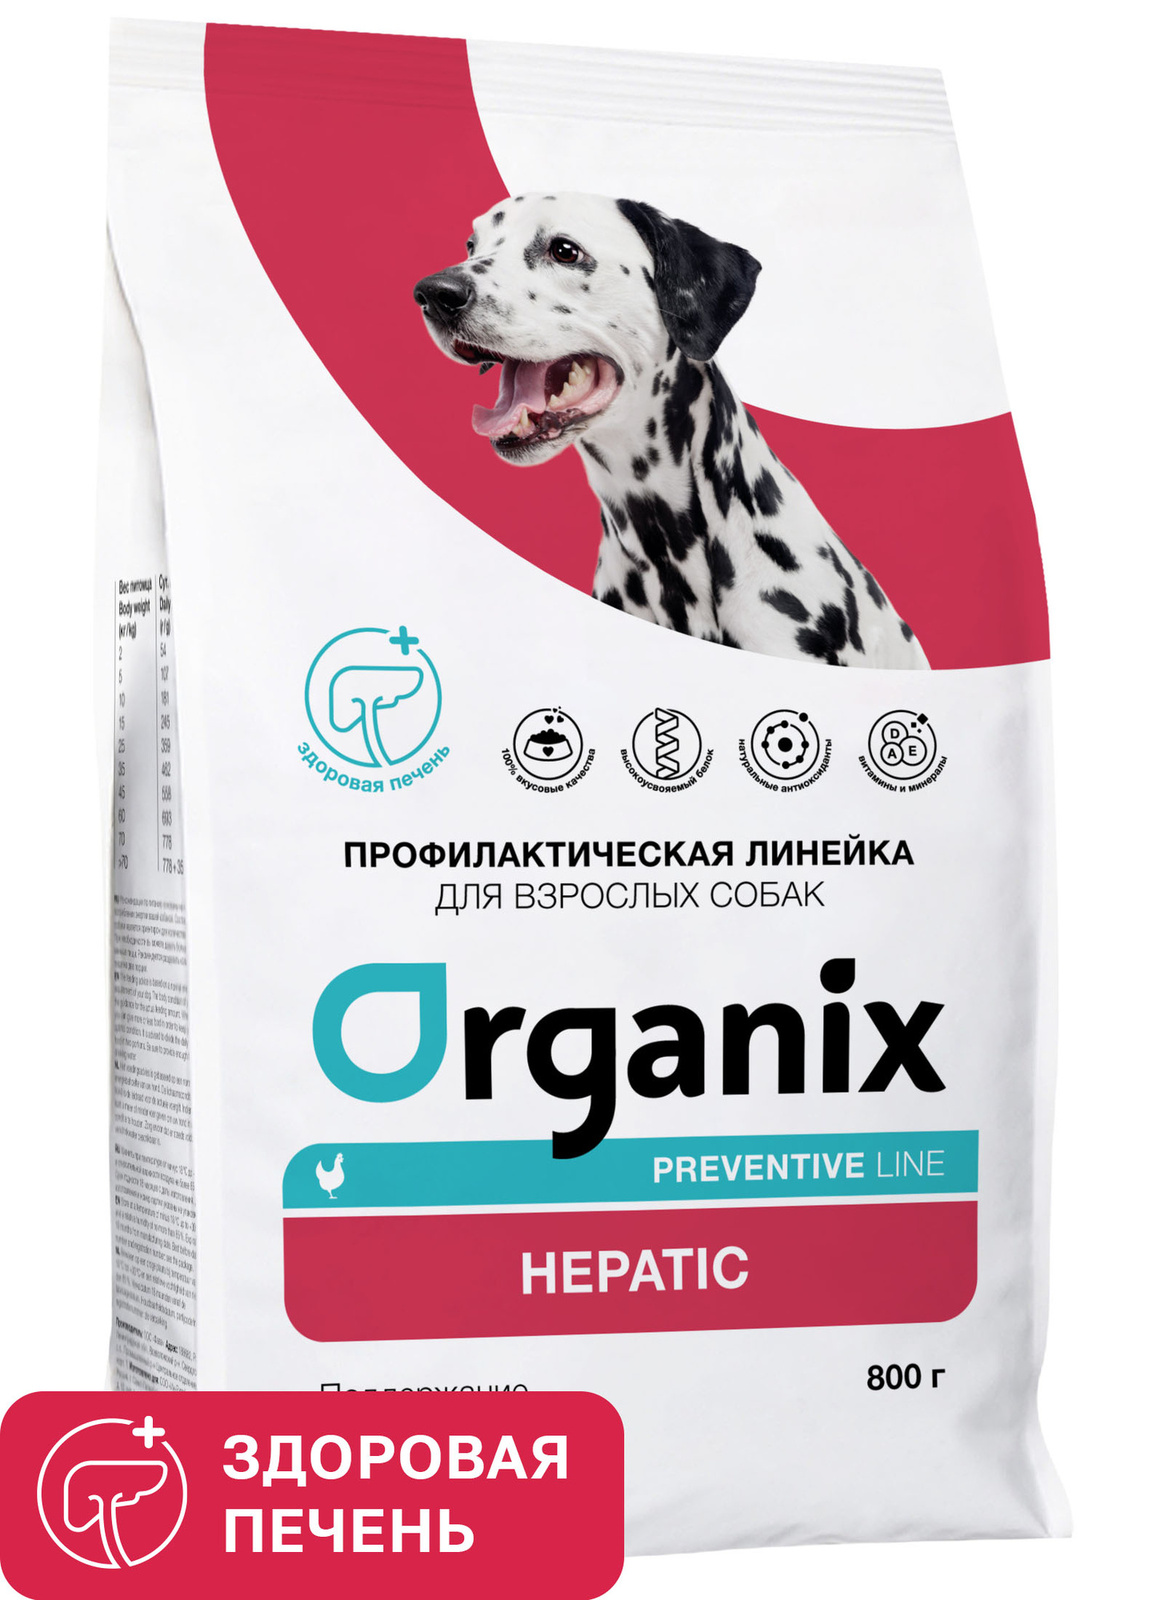 Organix Preventive Line Organix Preventive Line hepatic сухой корм для собак Поддержание здоровья печени (800 г) organix preventive line organix preventive line renal сухой корм для кошек поддержание здоровья почек 600 г